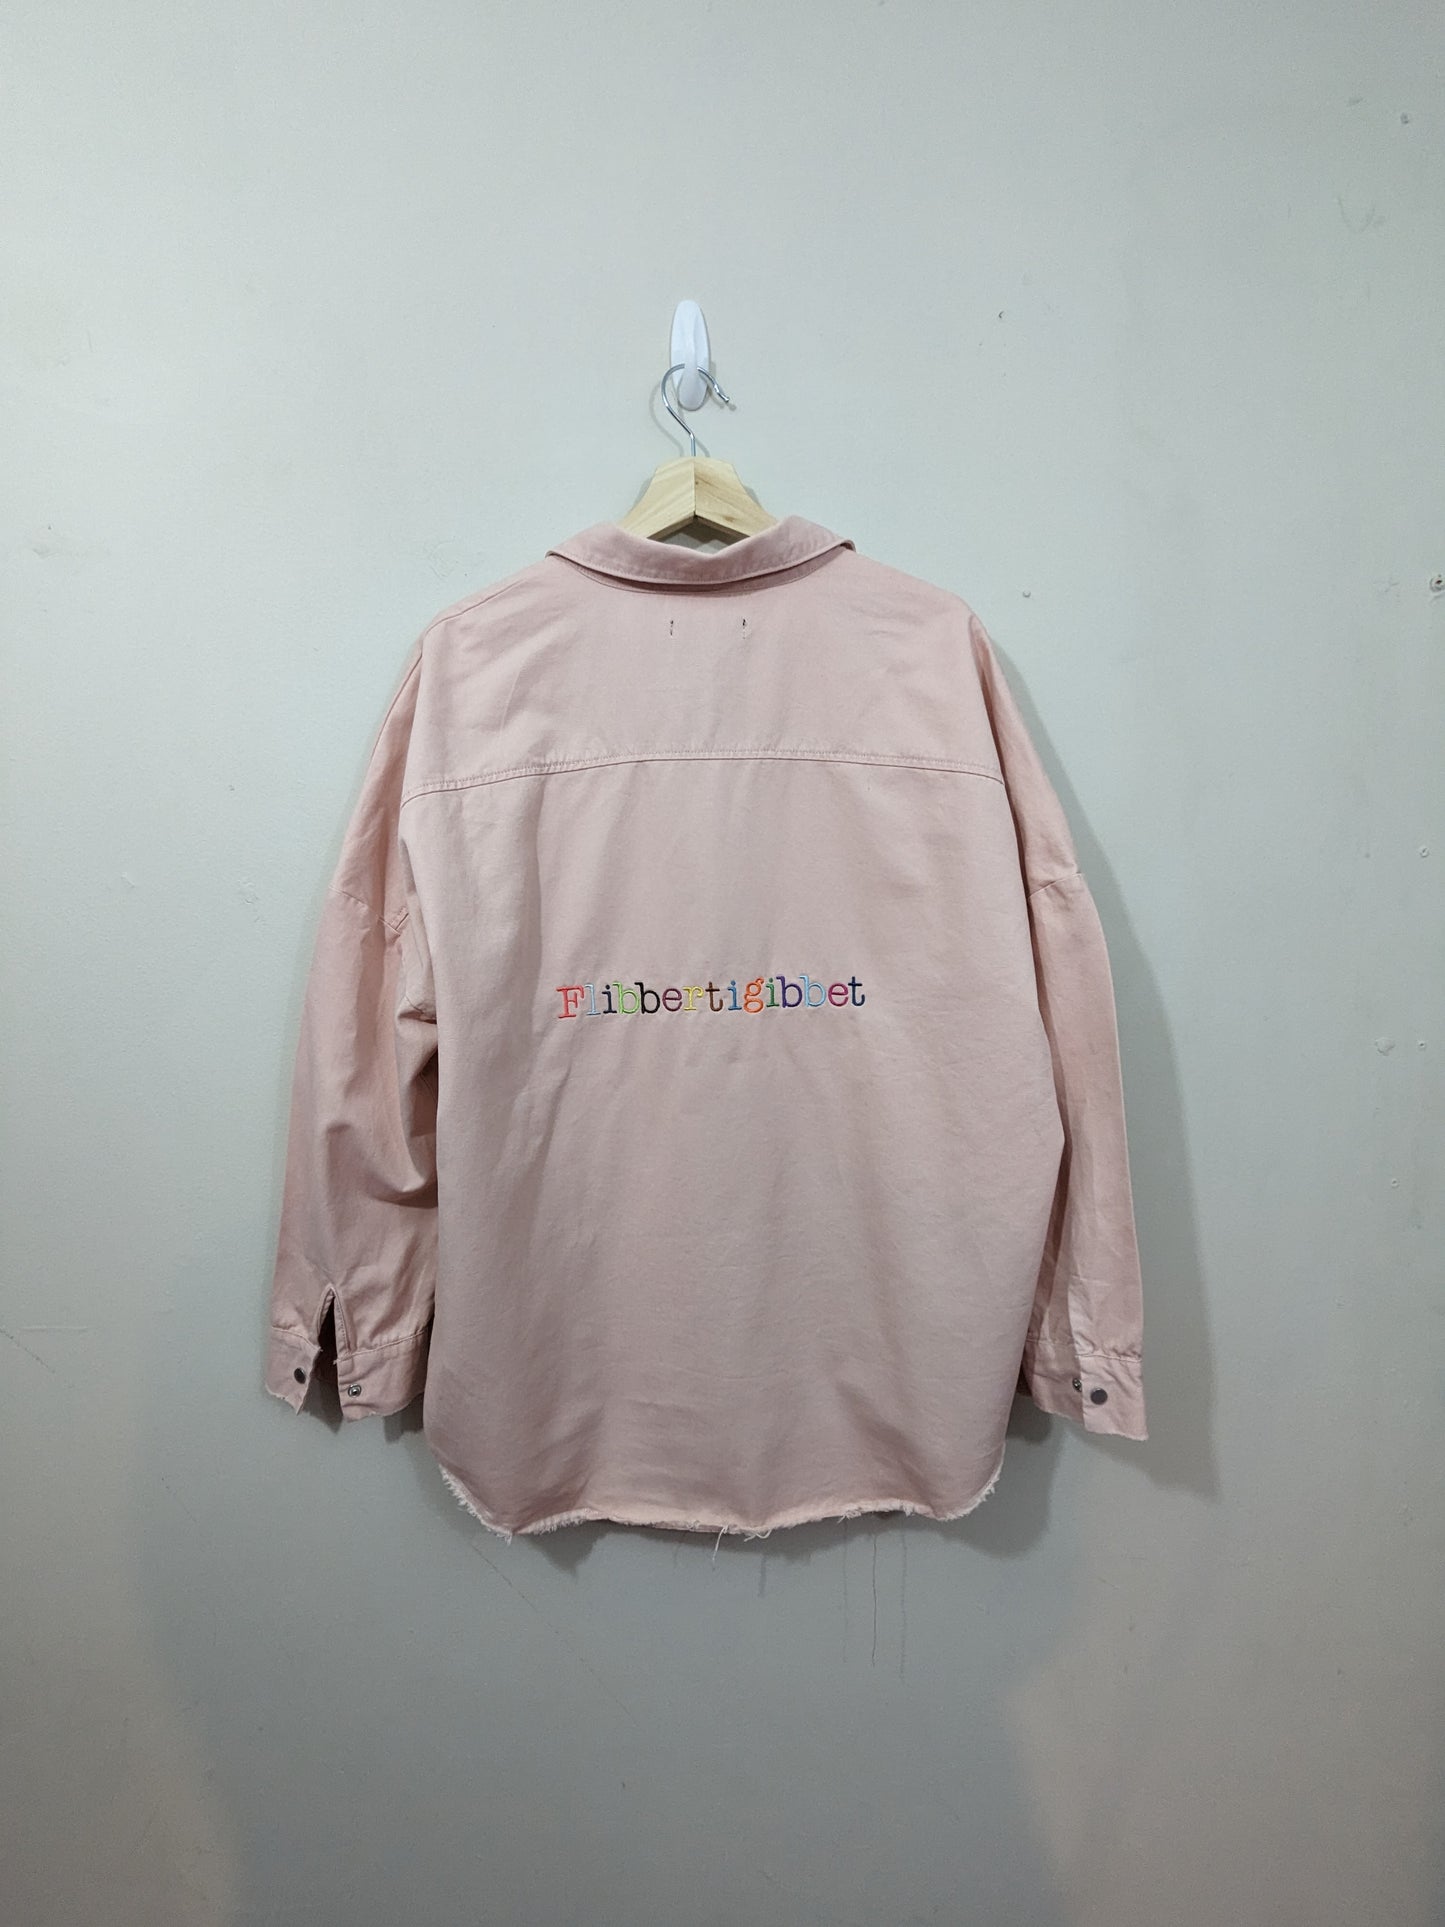 Size 14 Flibbertigibbet Upcycled Pink Denim Shirt - Rainbow Embroidery - Whimsical Design